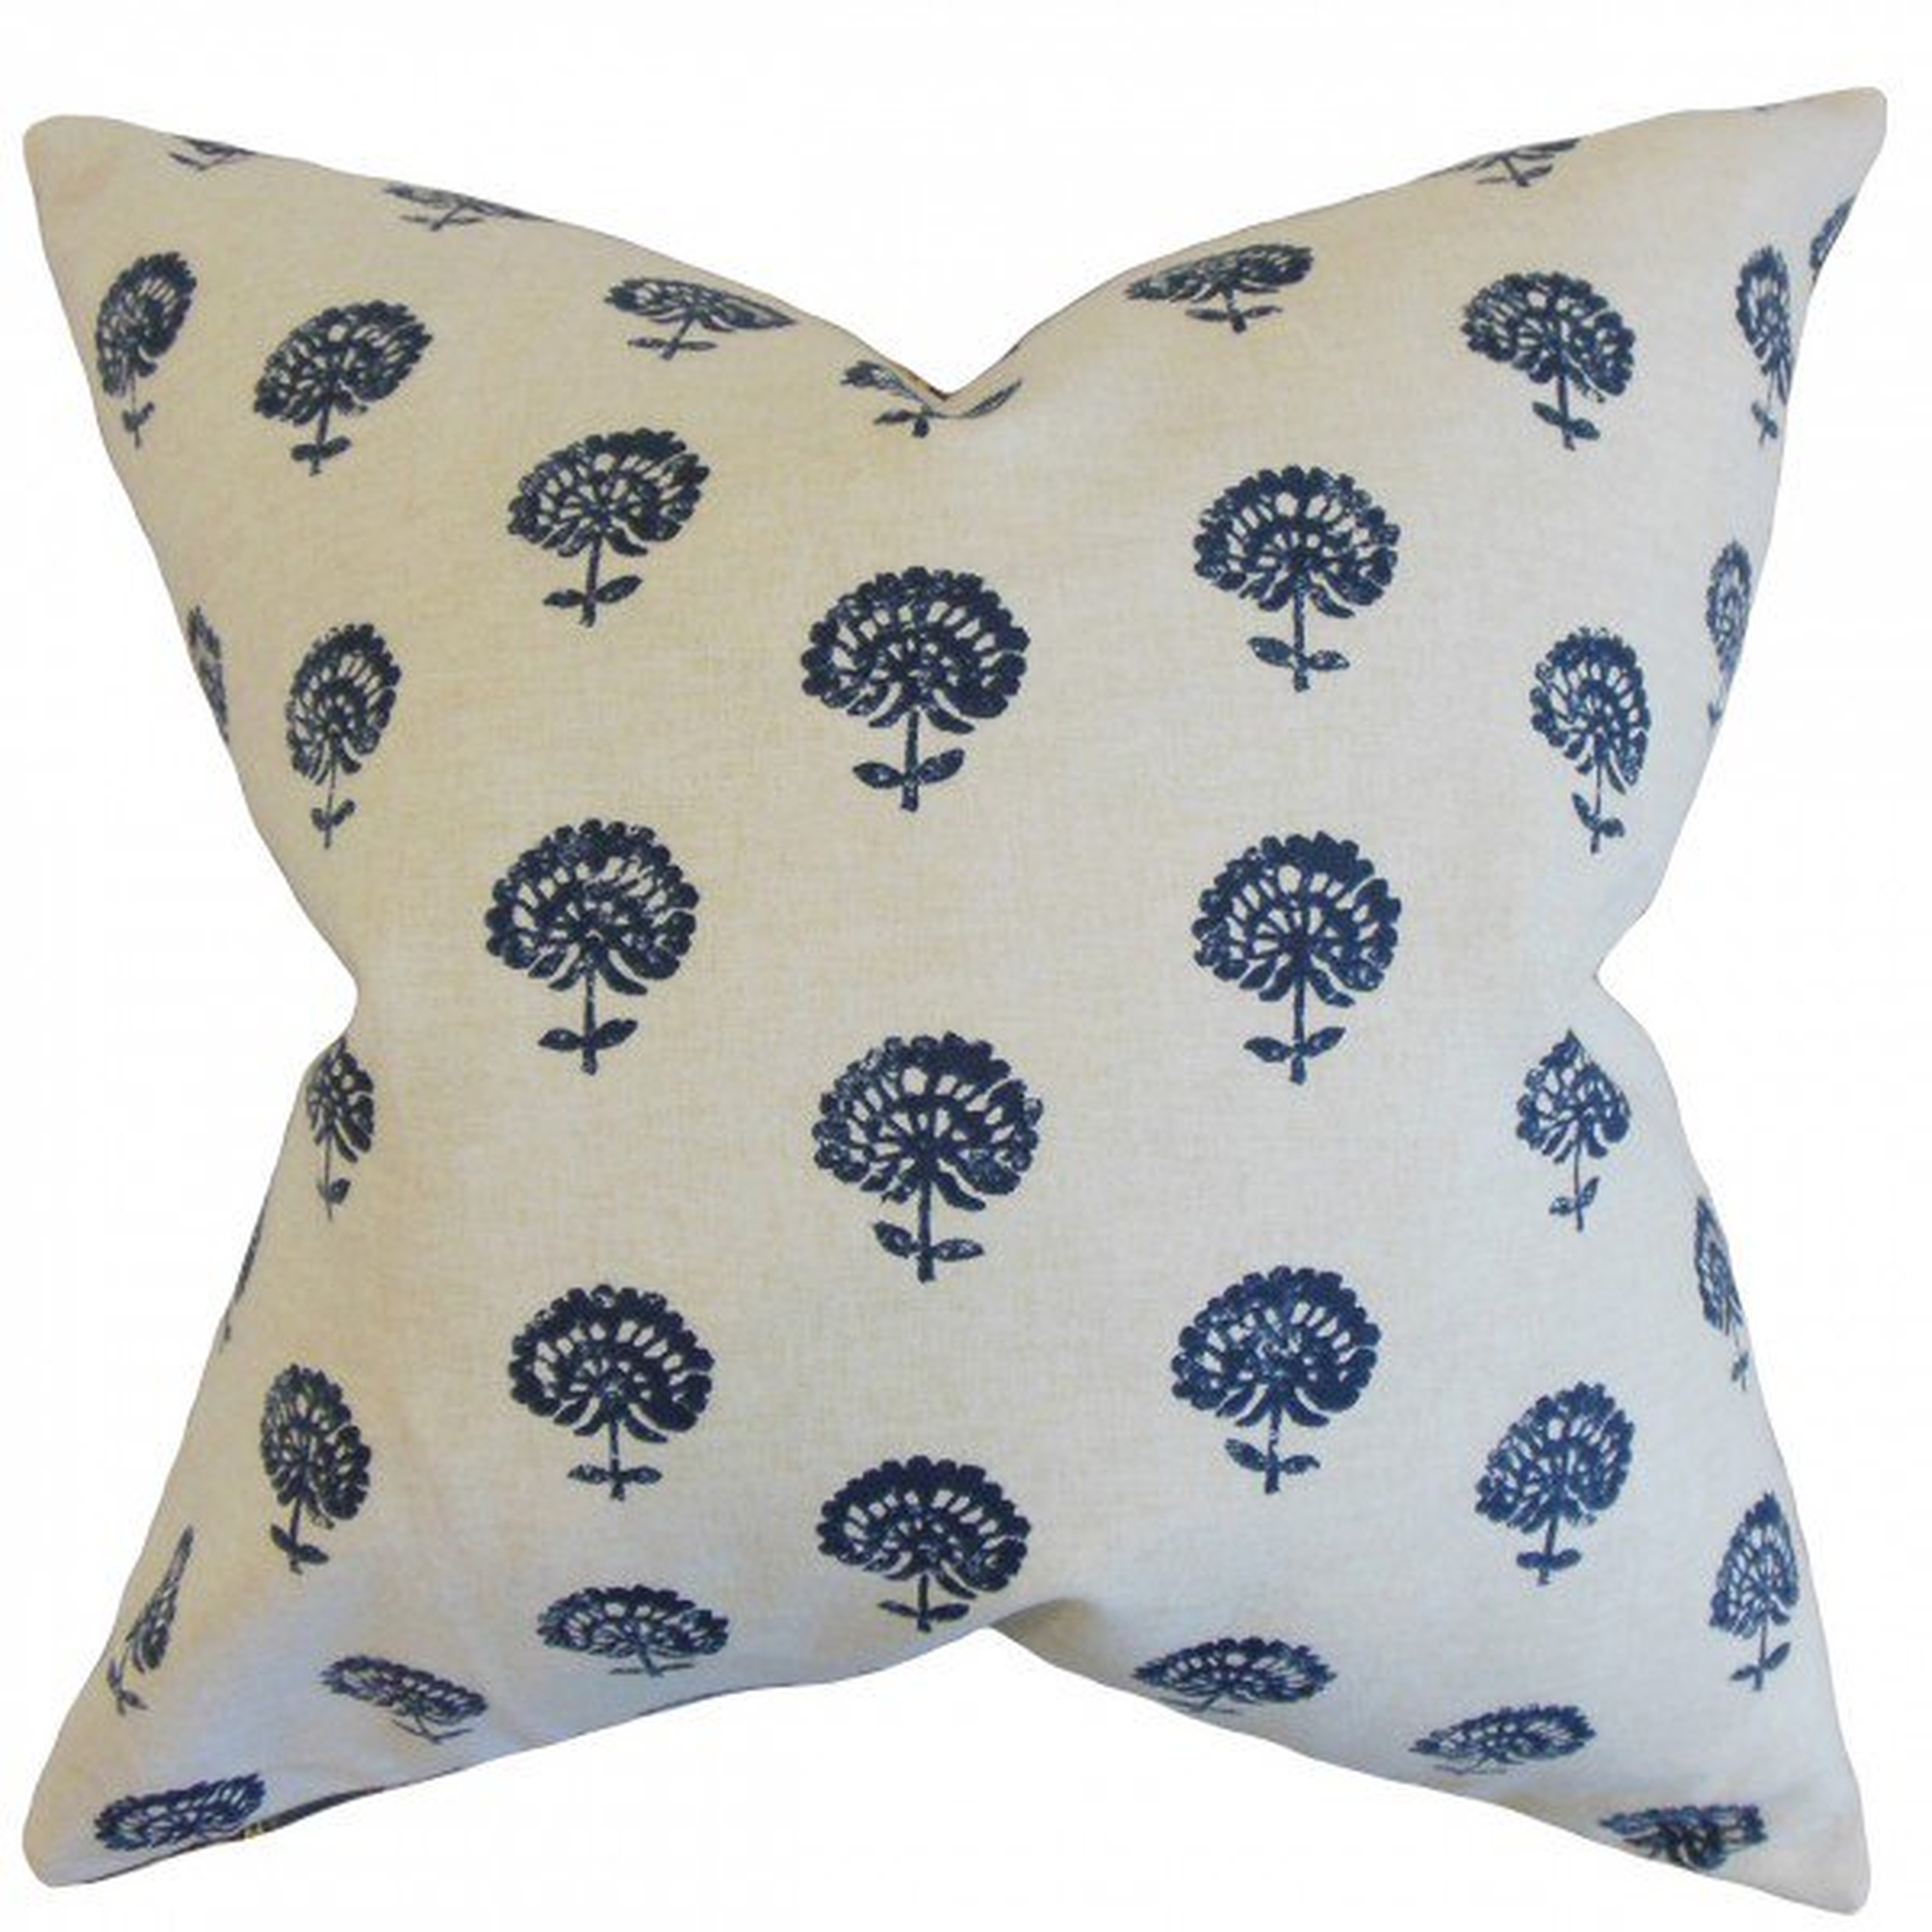 Londyn Floral Pillow Indigo - 18" x 18" - Linen & Seam